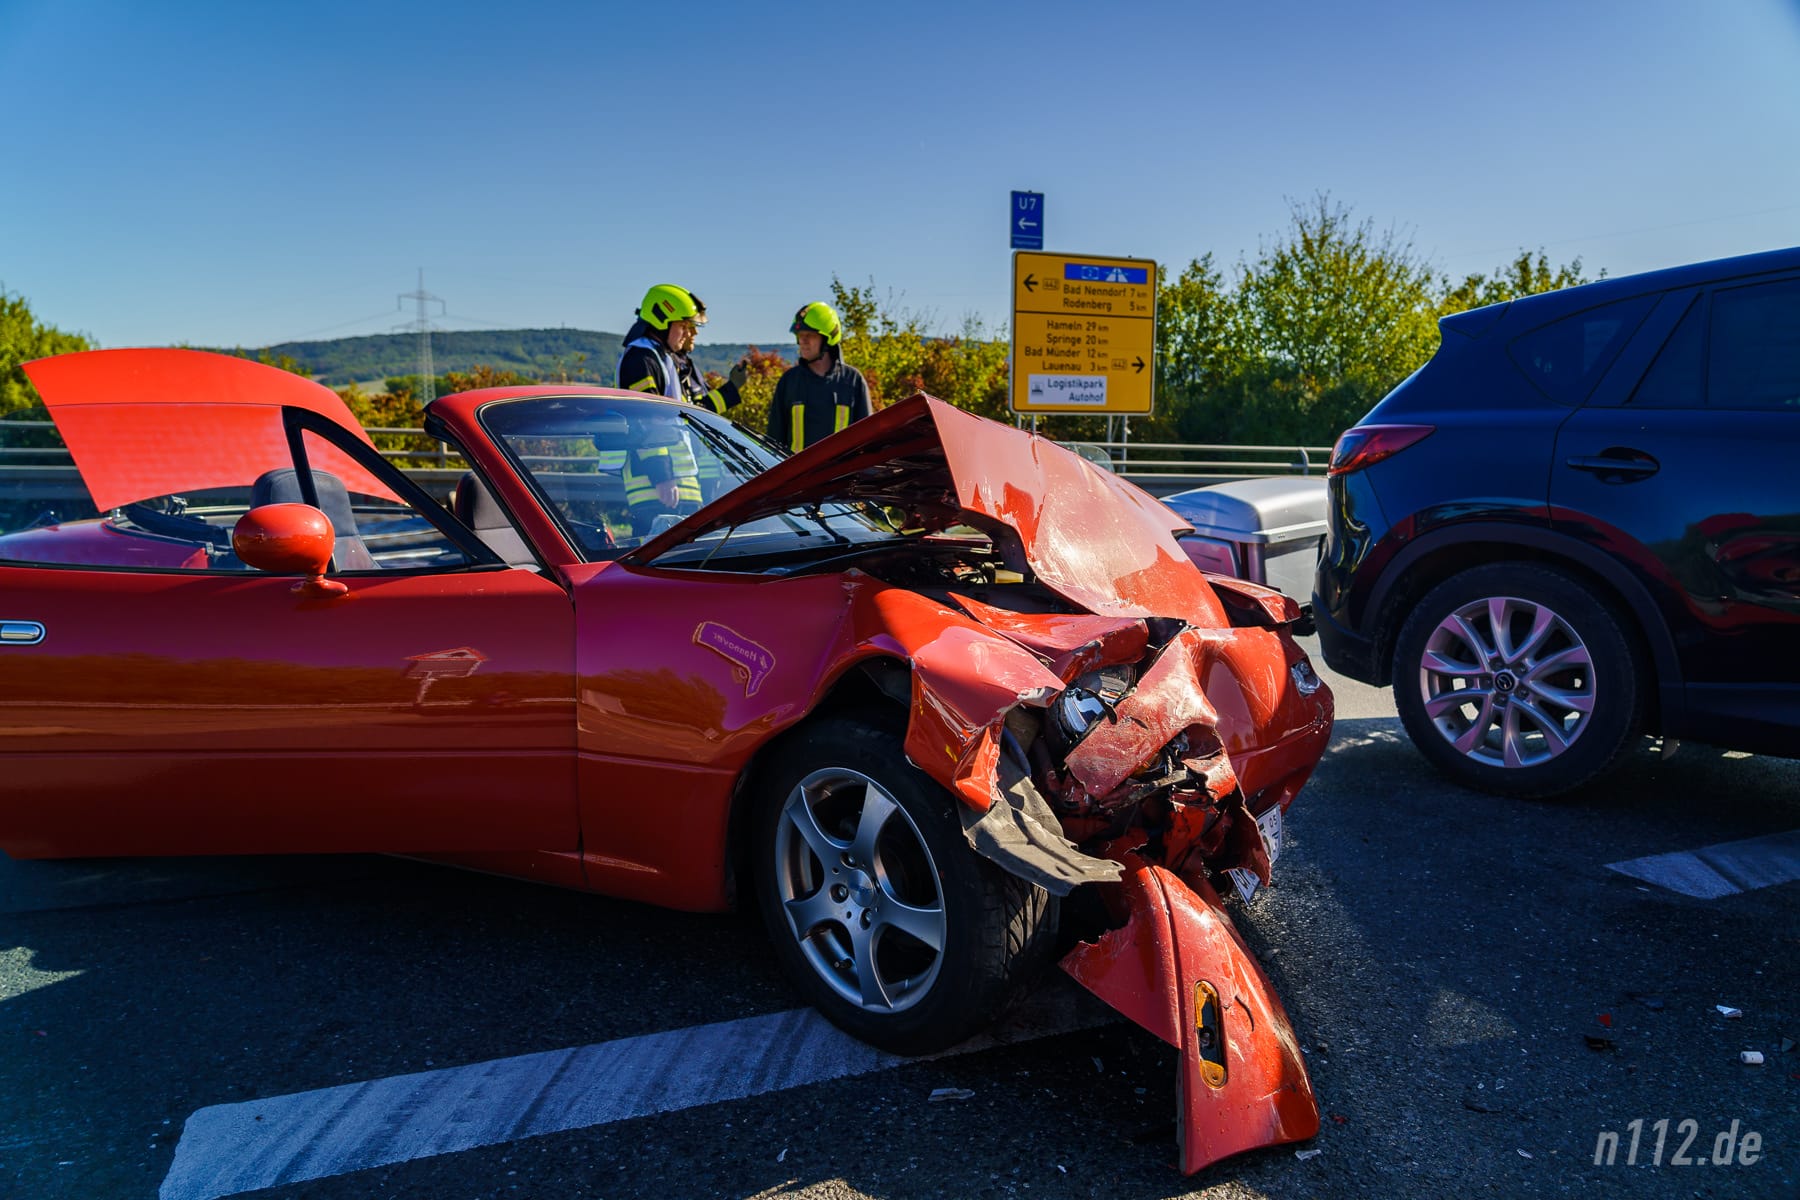 Das Mazda-Cabrio wurde erheblich beschädigt (Foto: n112.de/Stefan Hillen)